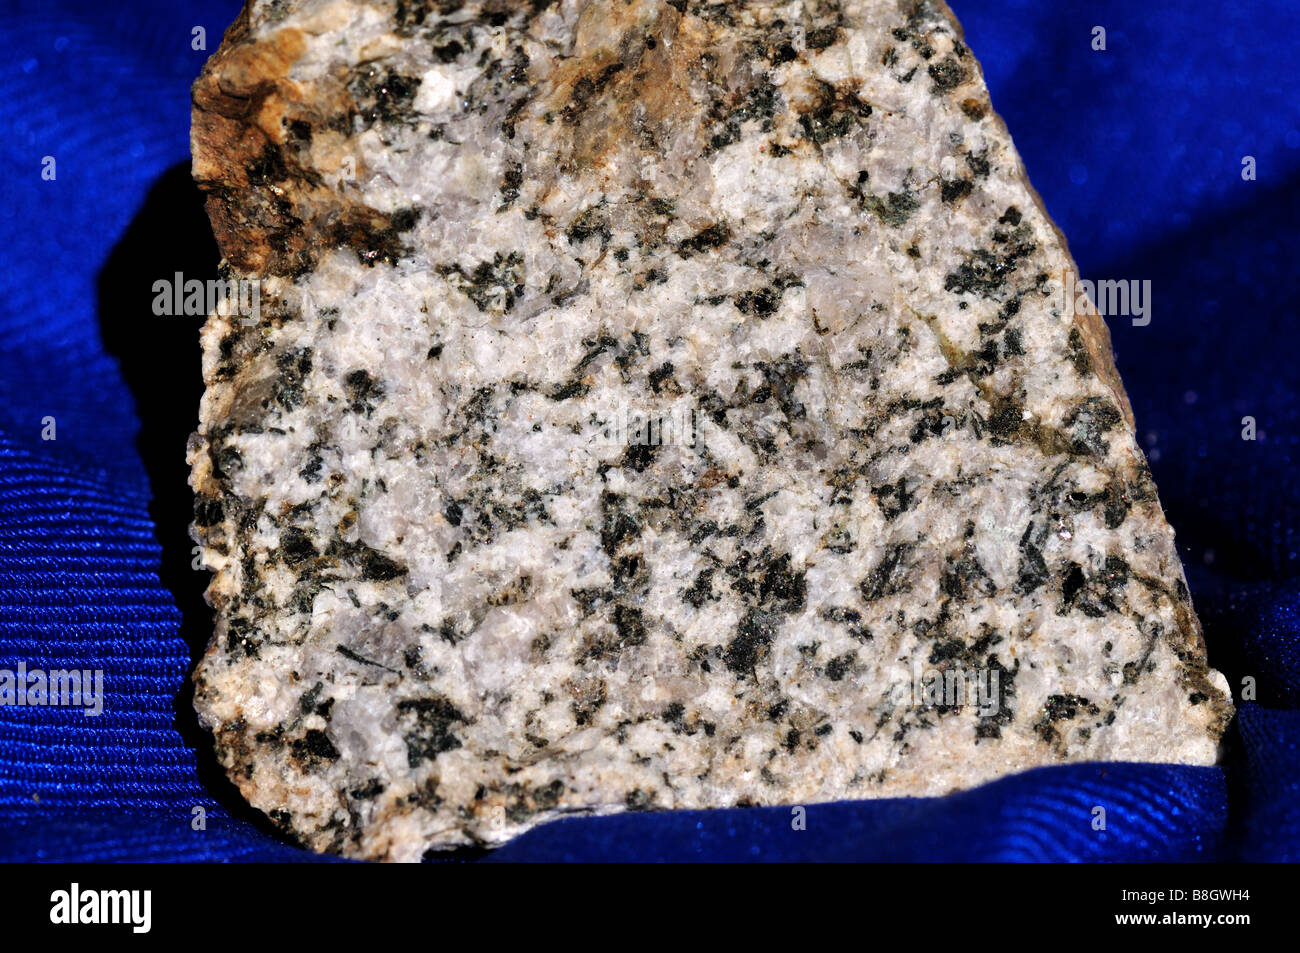 Diorite consists of dark colored amphibole and white feldspar. Stock Photo